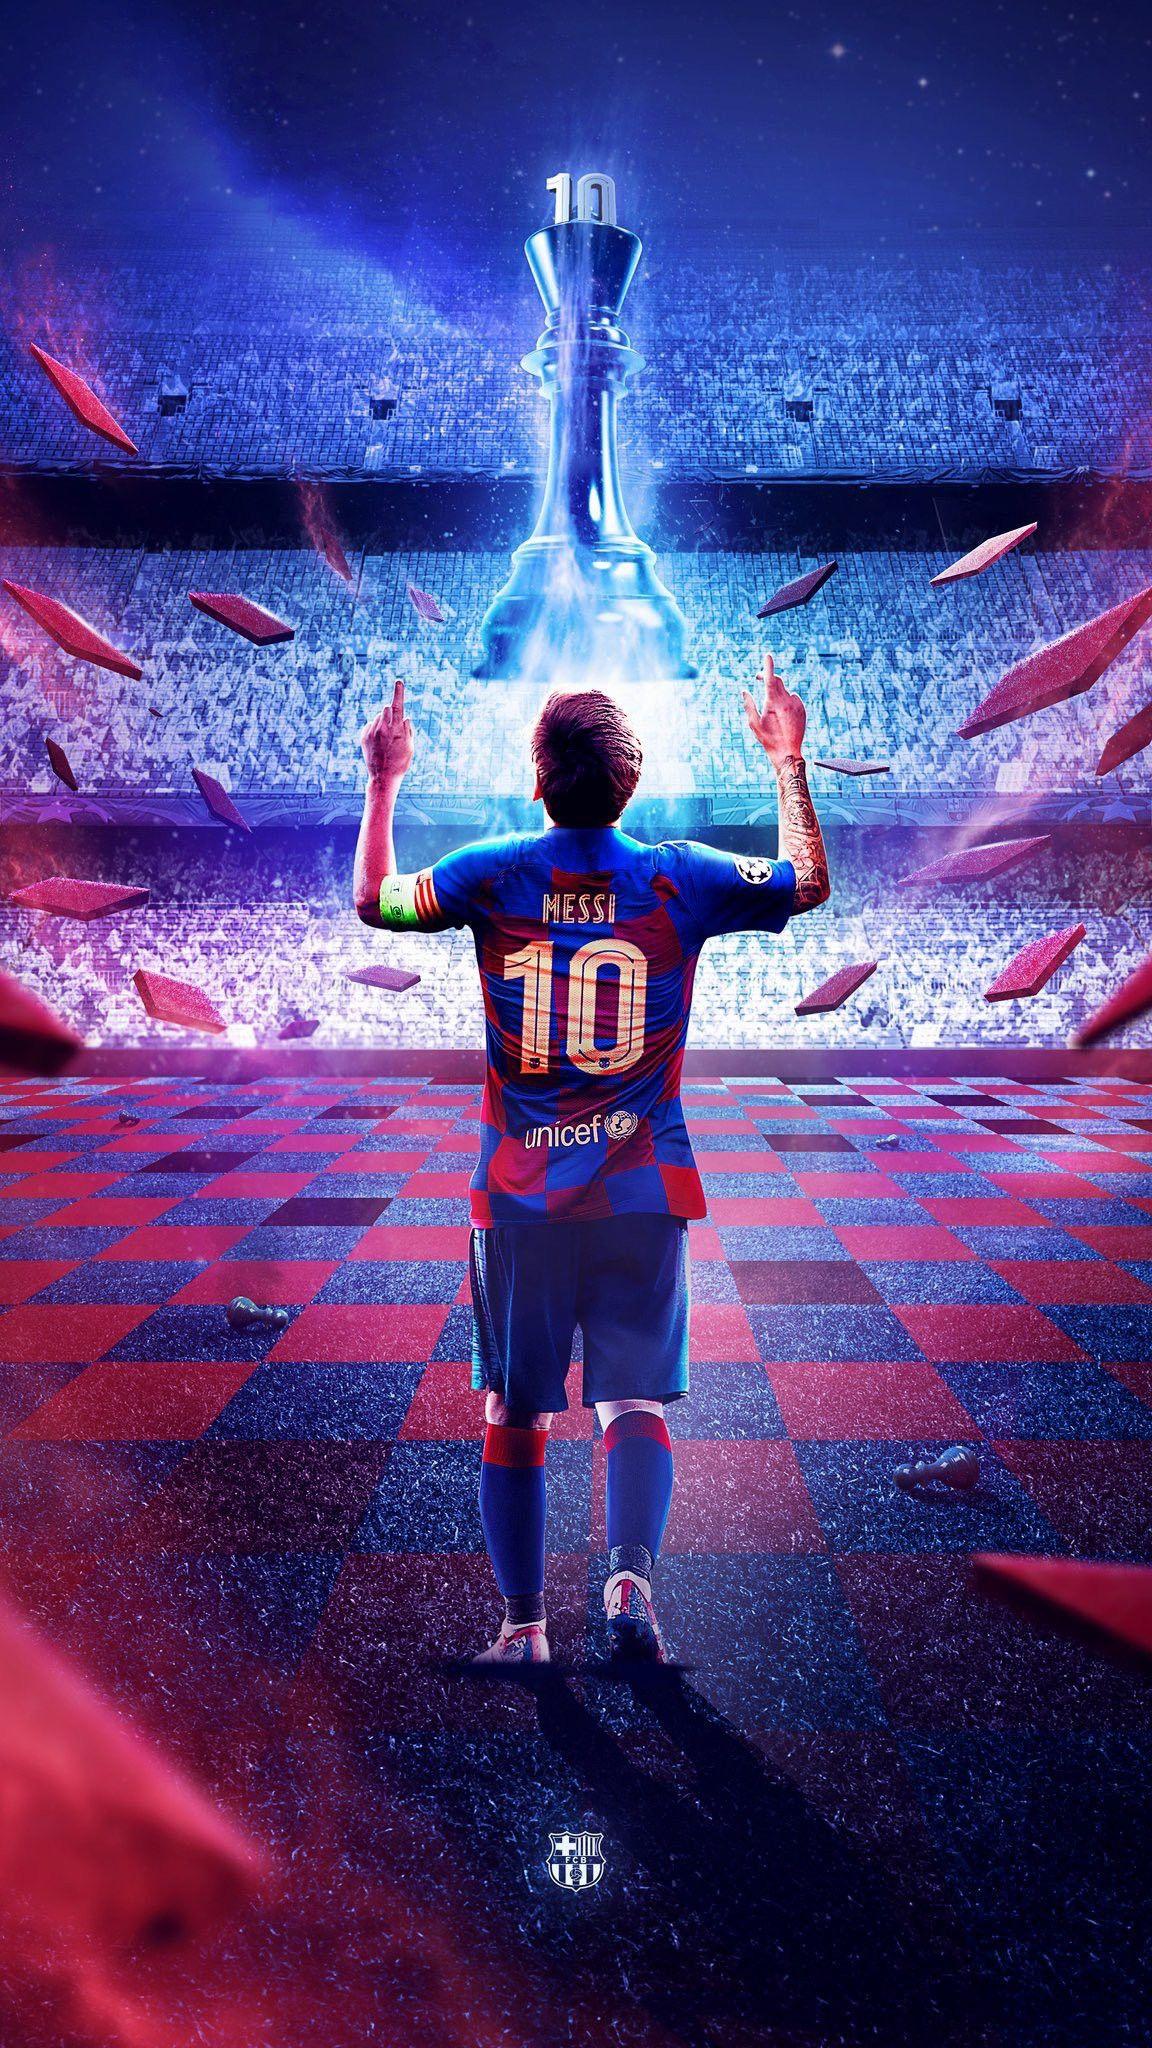 Hình Nền Messi - Với hình nền của Lionel Messi, bạn sẽ ngập tràn niềm cảm hứng và động lực để giữ vững đam mê vào bóng đá. Hãy cùng tận hưởng các khoảnh khắc đỉnh cao của Messi và tìm kiếm những bức tranh tuyệt đẹp này để tạo ra bản sắc riêng của mình.